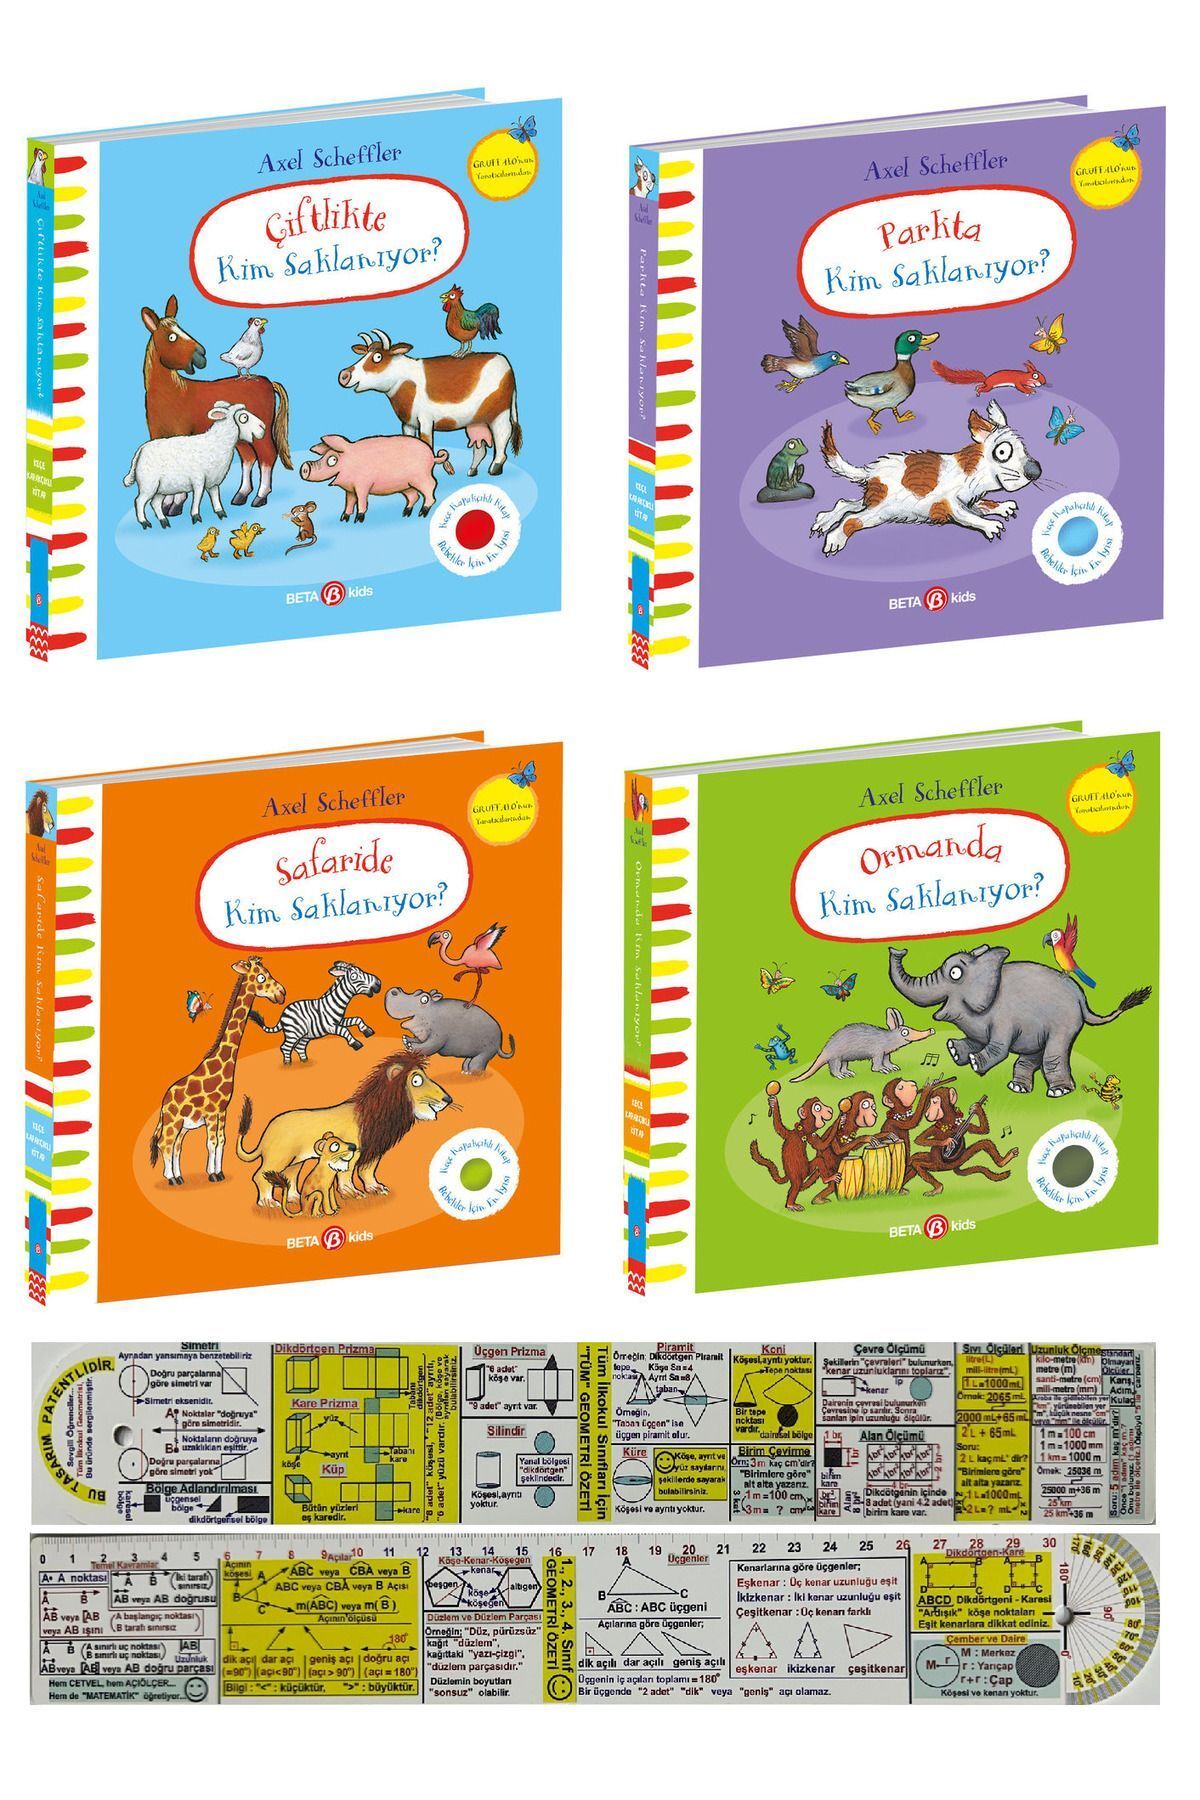 Beta Kids Çiftlikte+Parkta+Ormanda+Safaride Kim Saklanıyor 4'lü Keçeli Kitap Set + Matematik Öğreten Ayraç